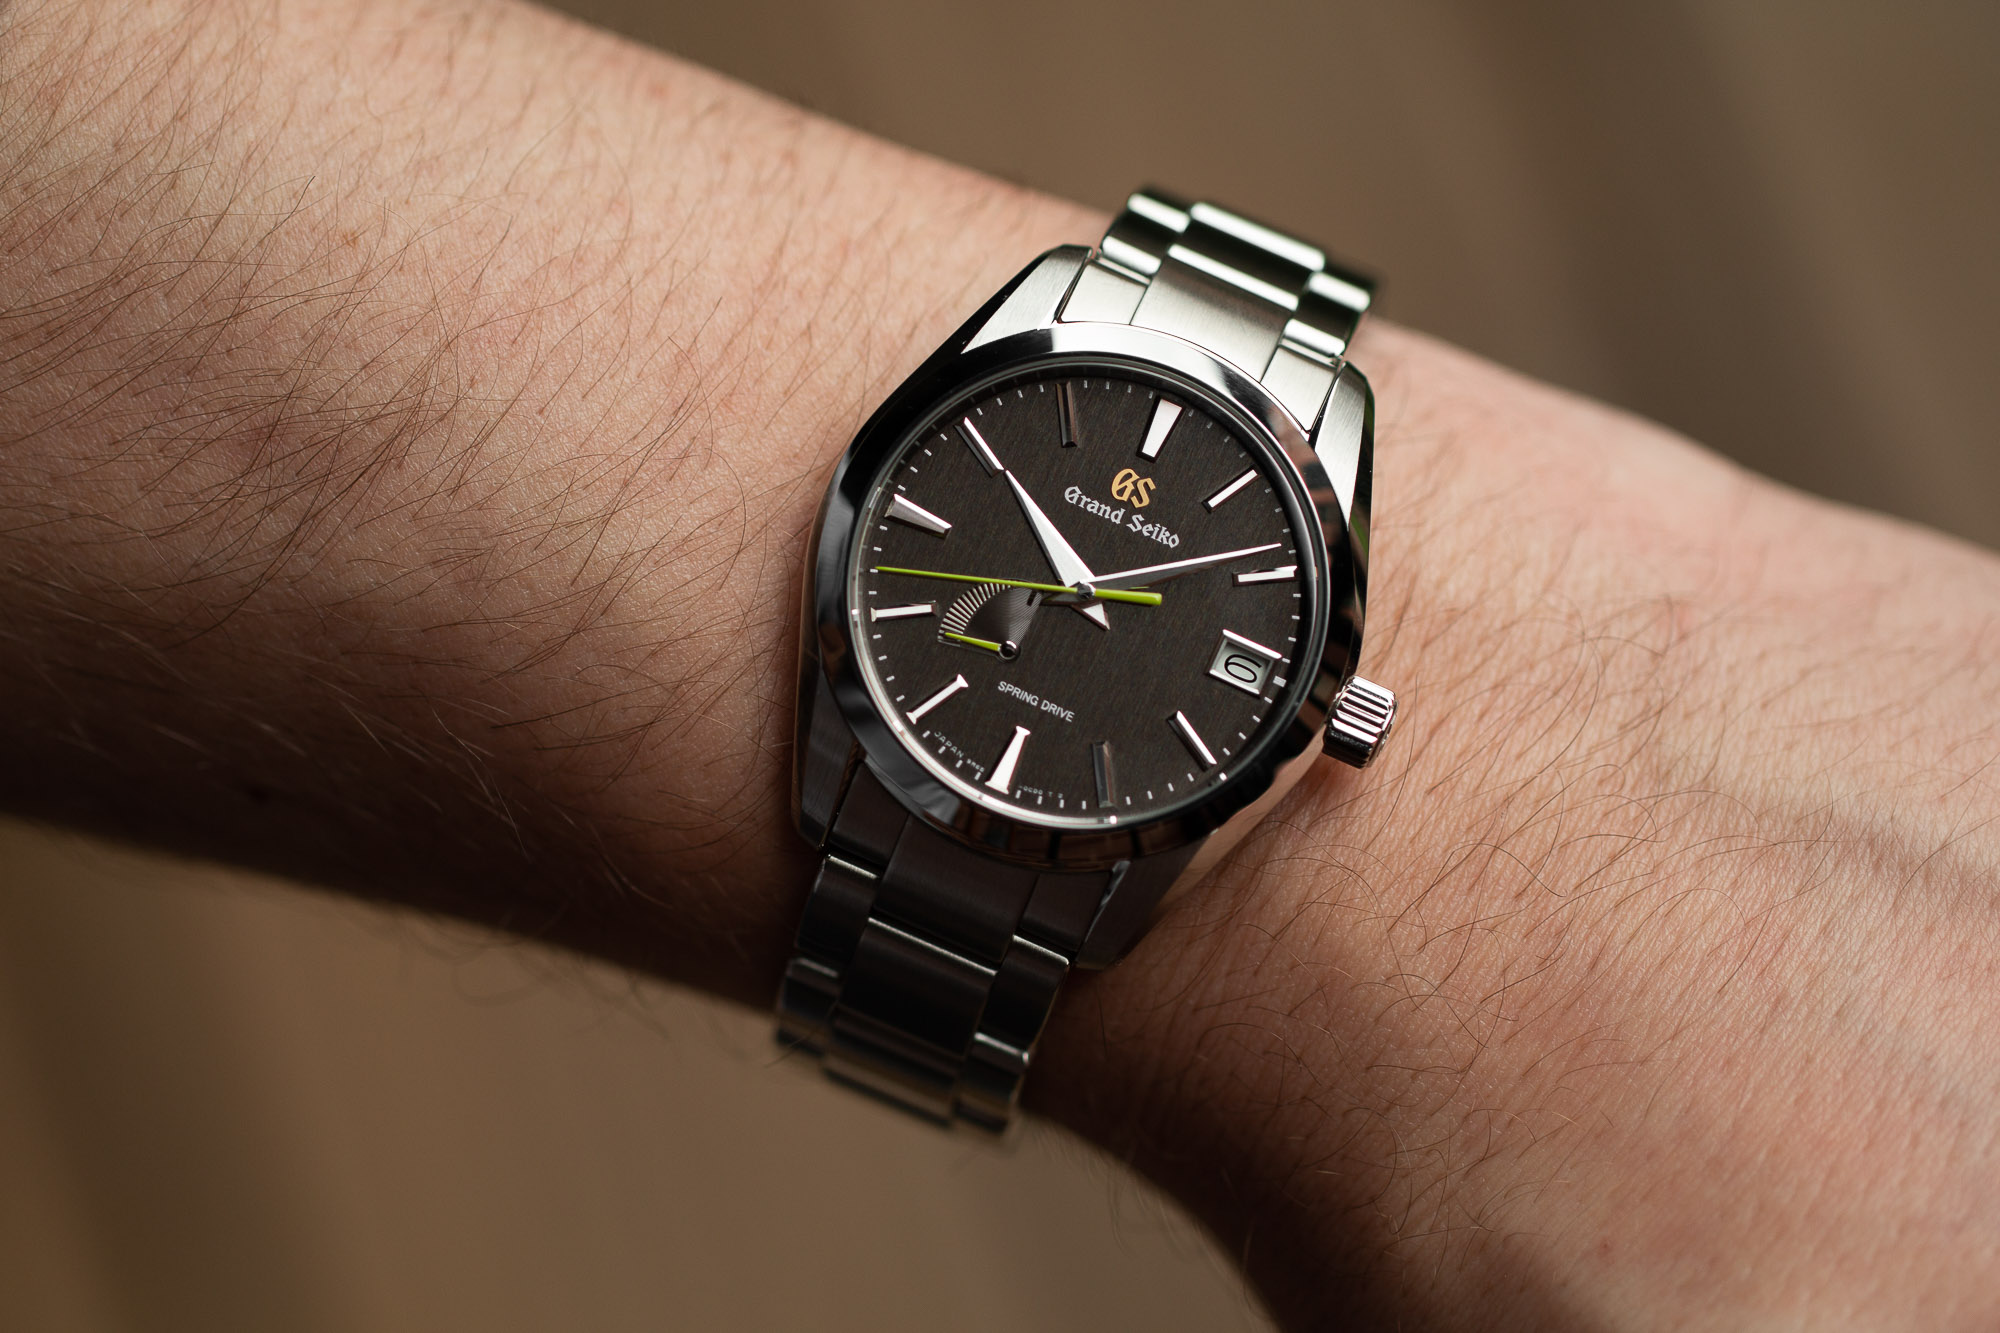 SBGA429 wristwatch on wrist.